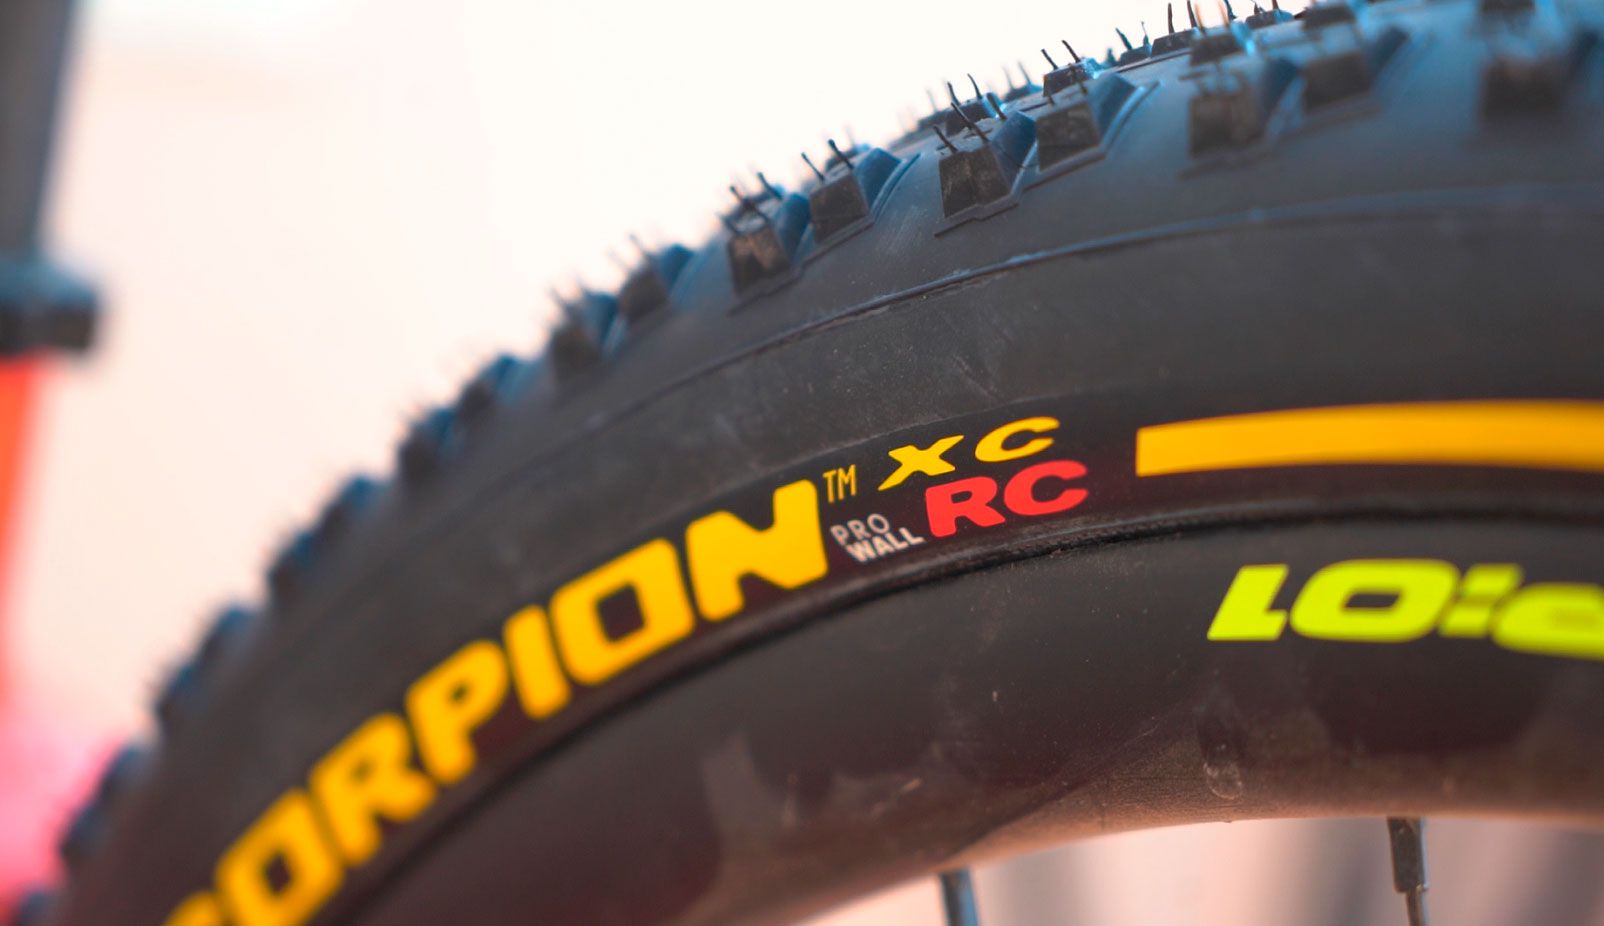 Neumáticos de MTB 2,4" para XC, ¿la gran para bici?